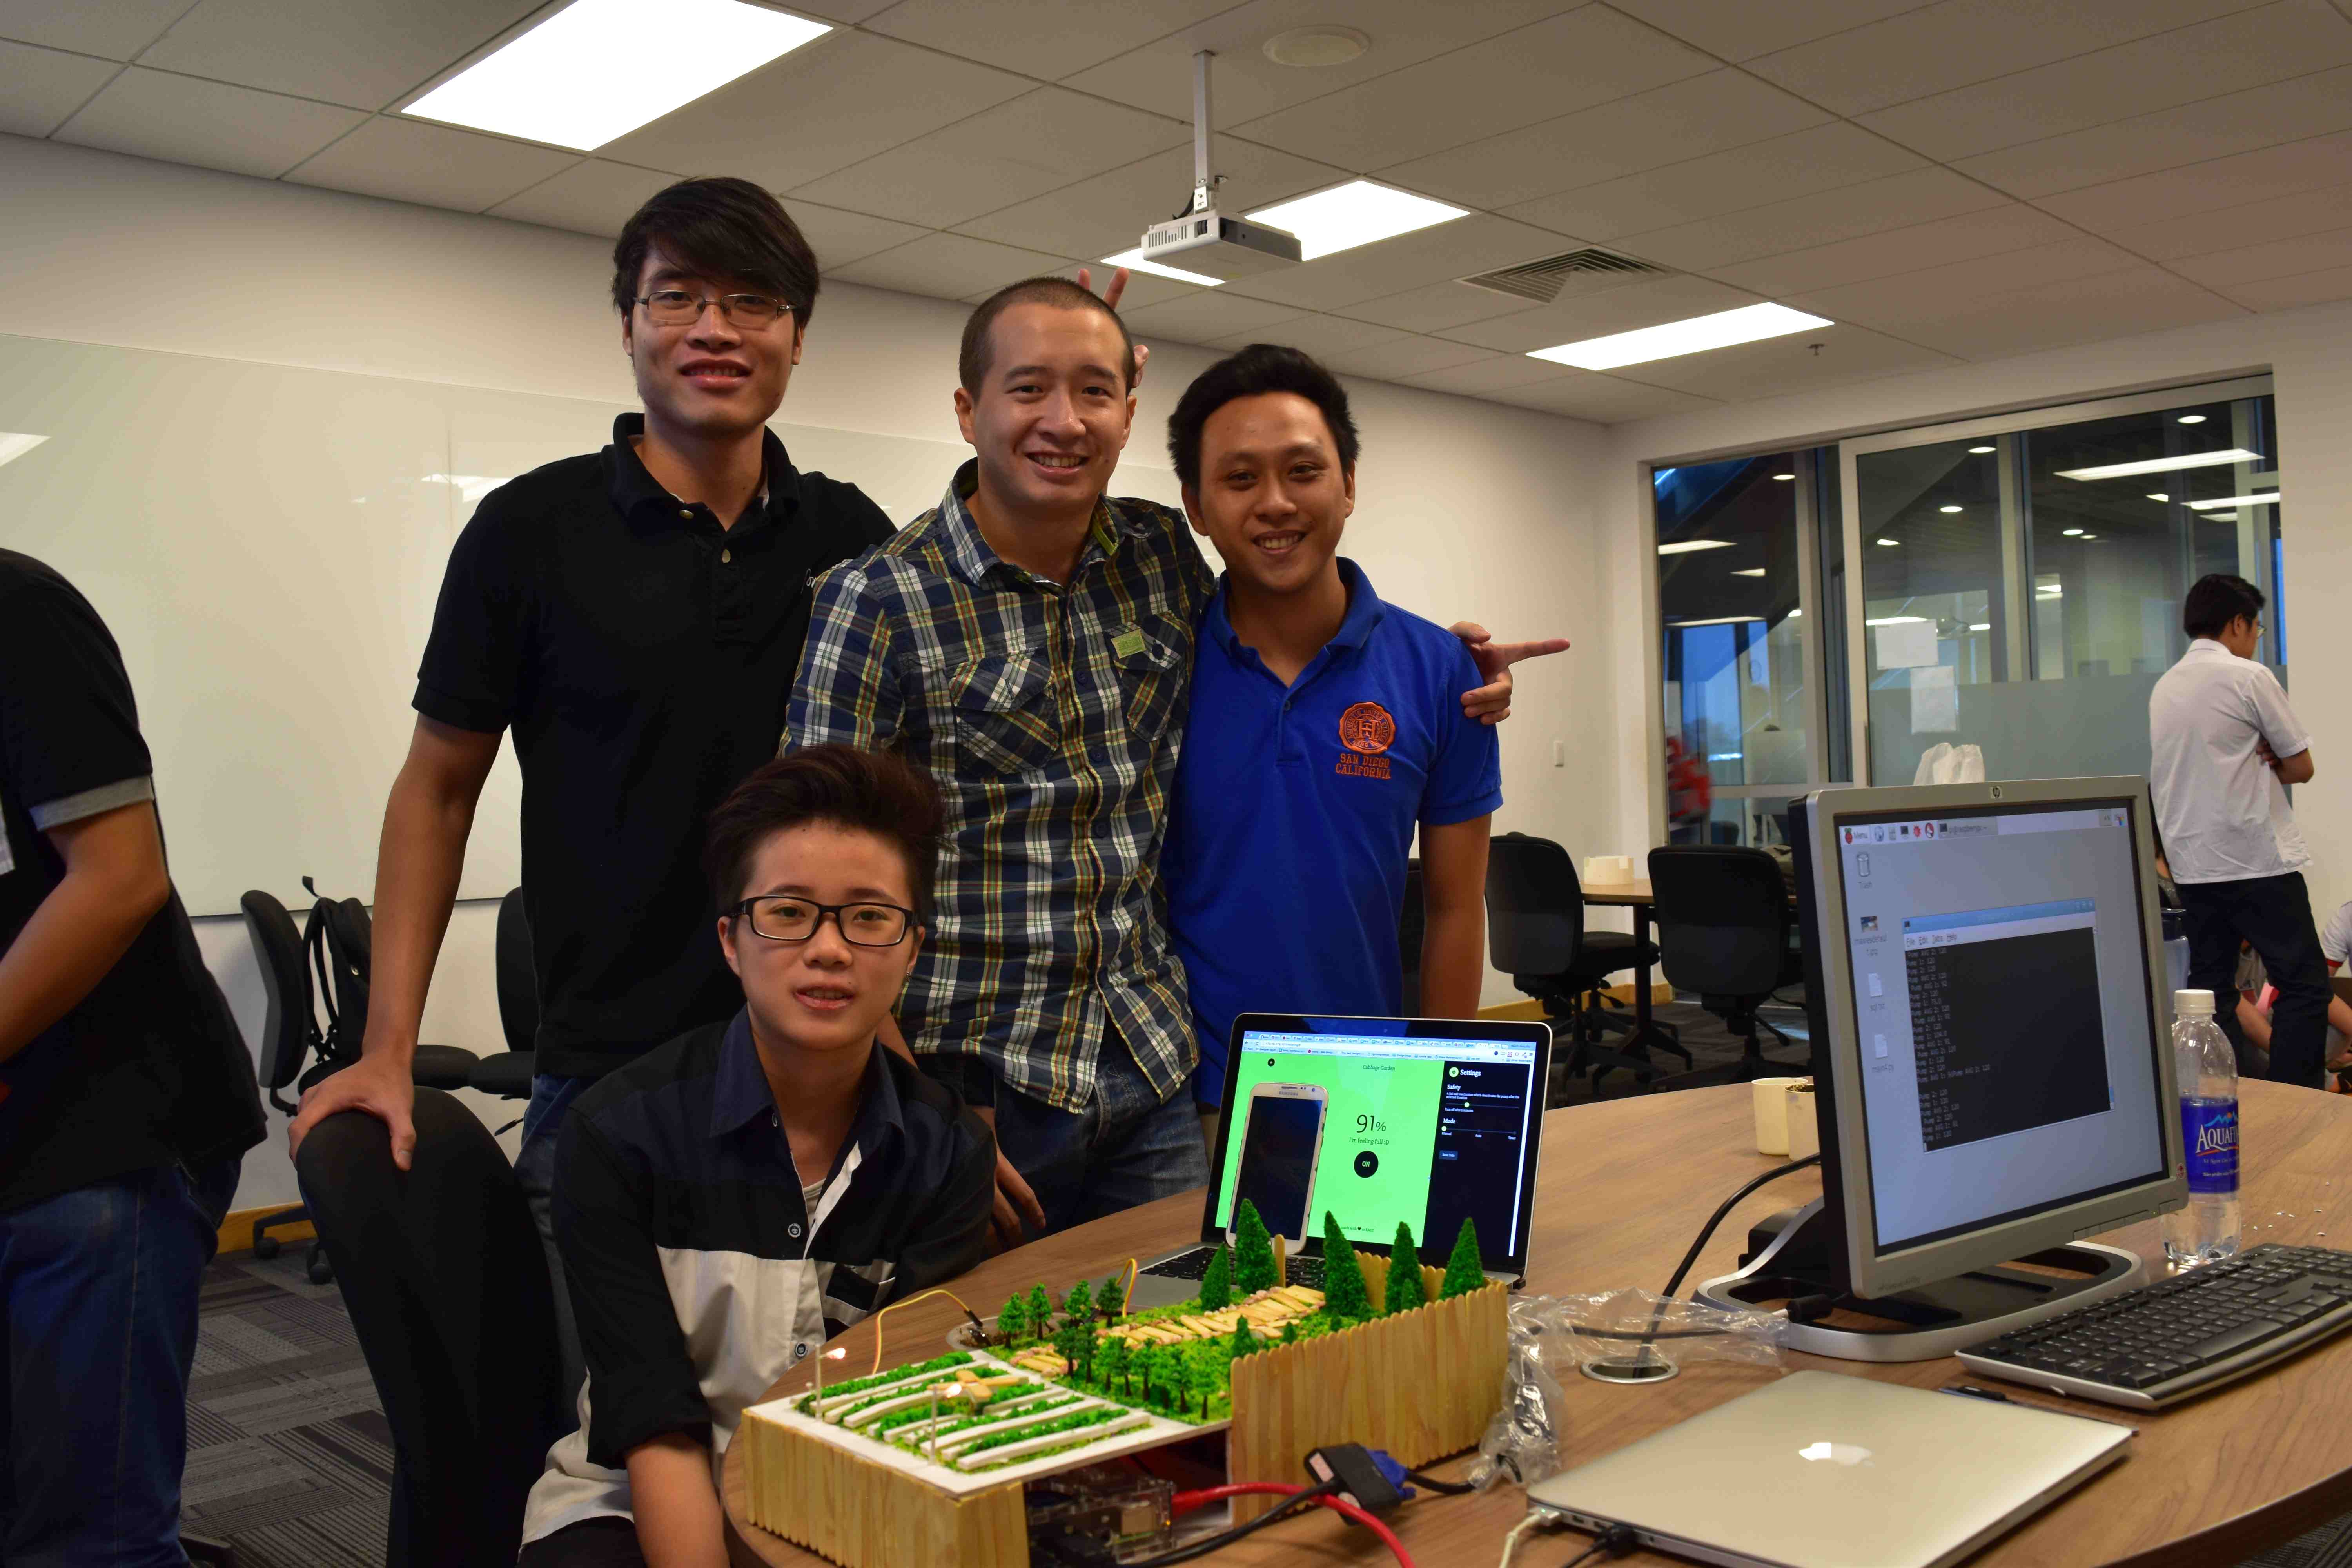 Sinh viên ngành Công nghệ thông tin, Đại học RMIT Việt Nam, (từ trái sang phải) Phạm Đức Thành, Bùi Việt Phương, Nguyễn Sơn Hải Đăng và Trần Thạch Thảo (ngồi) với Hệ thống tưới tự động tại Triển lãm nghề nghiệp và trưng bày dự án của sinh viên Khoa Công nghệ vào tháng 9/2016.